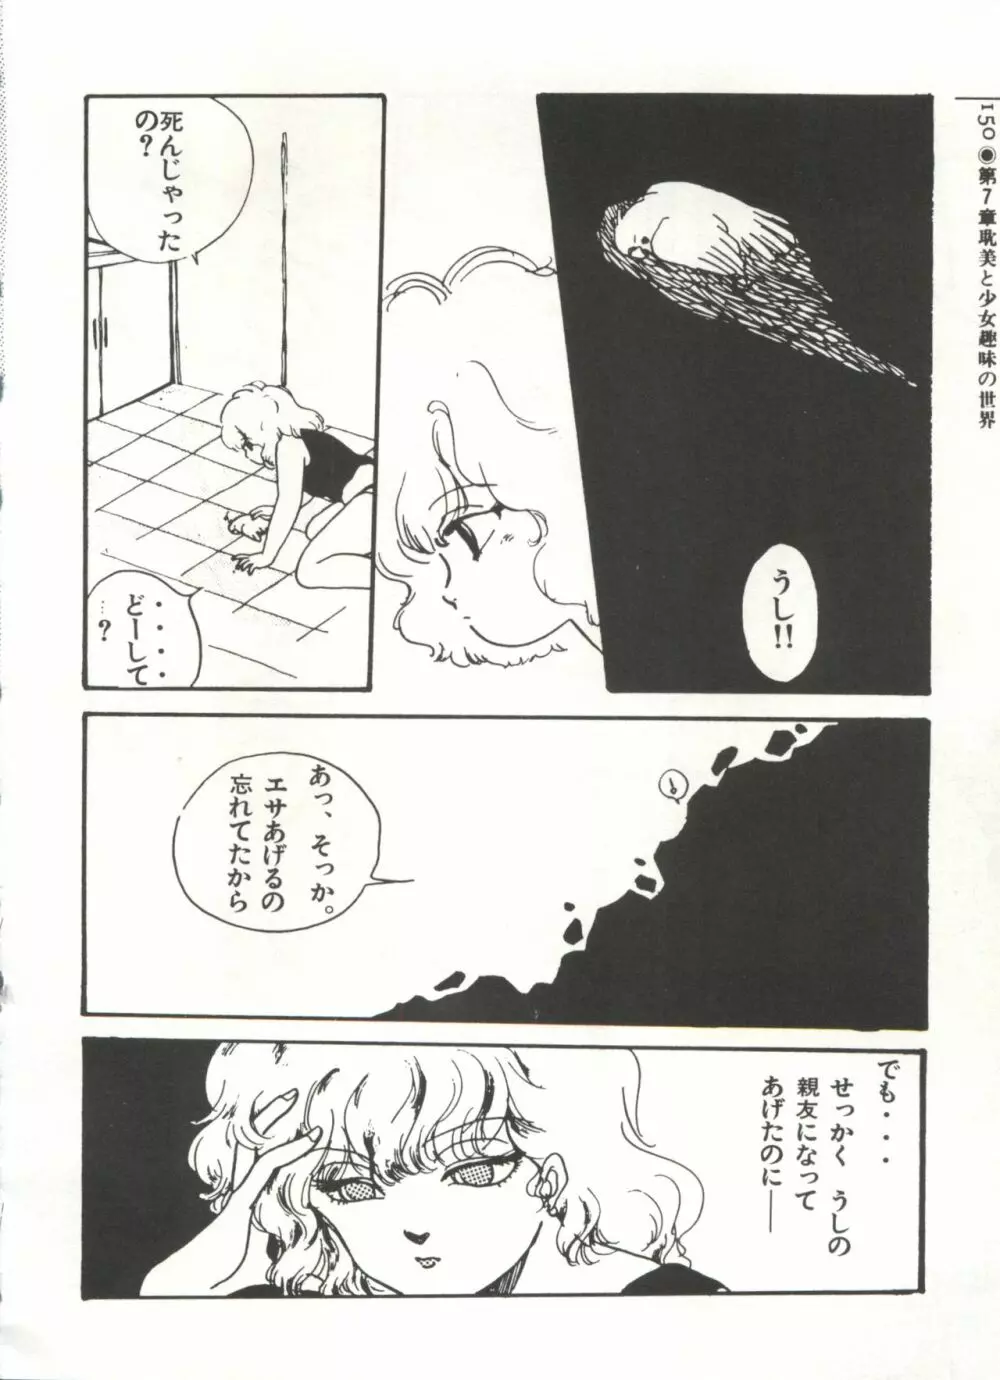 [Anthology] 美少女症候群(2) Lolita syndrome (よろず) 153ページ